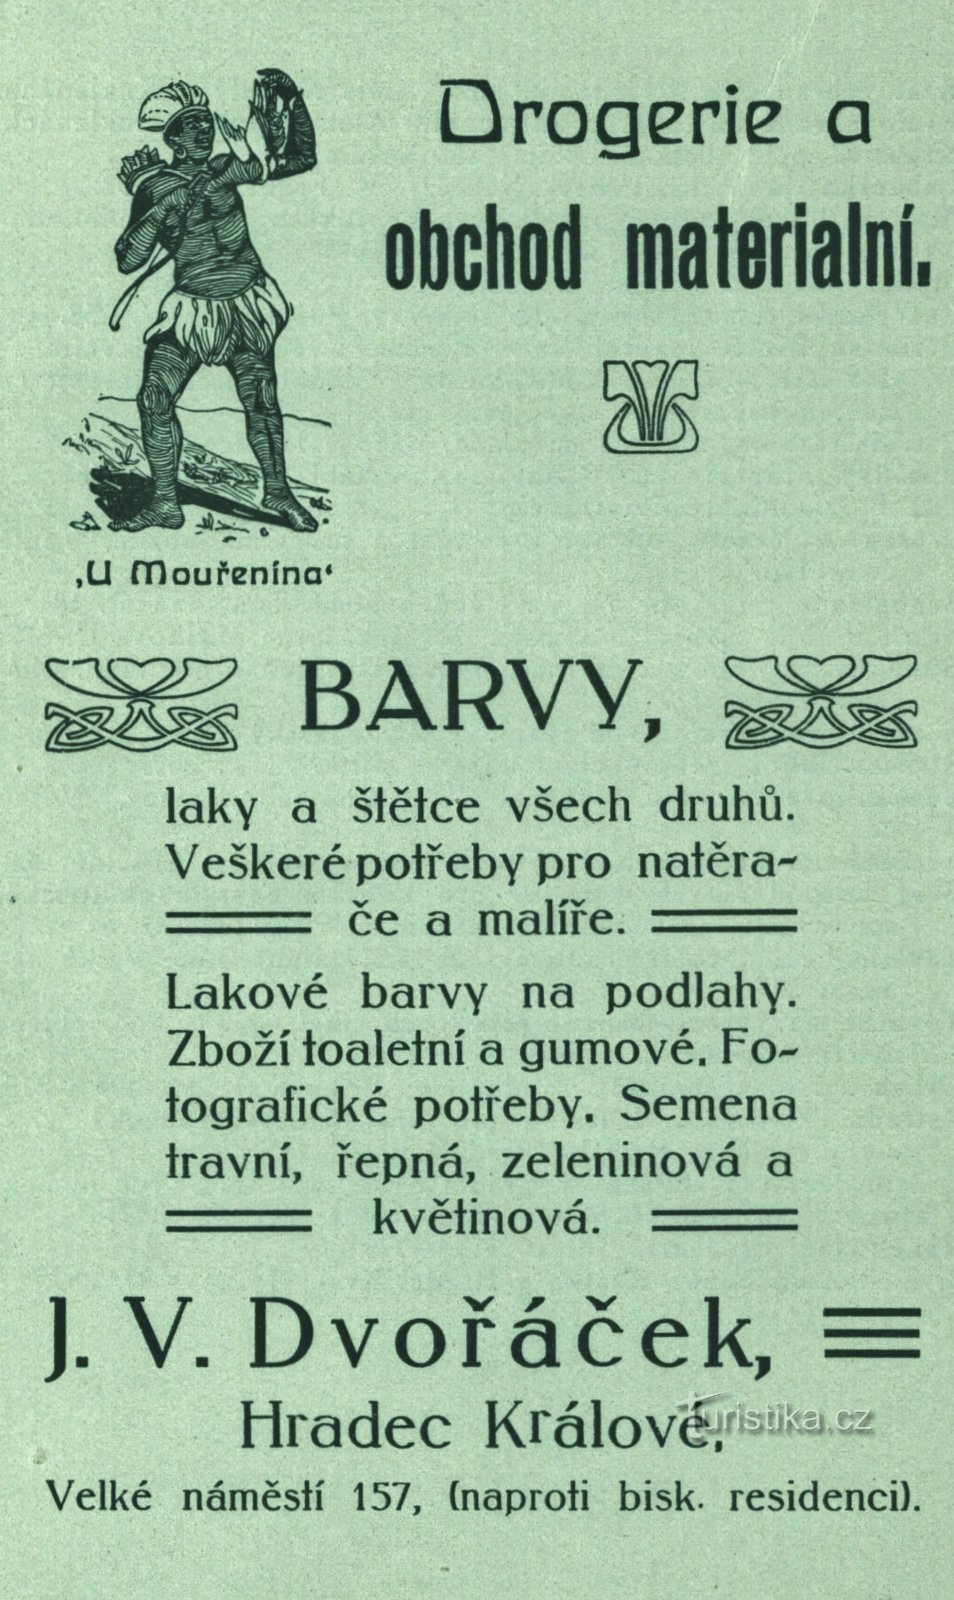 Publicité d'époque de la pharmacie Dvořáček de 1896